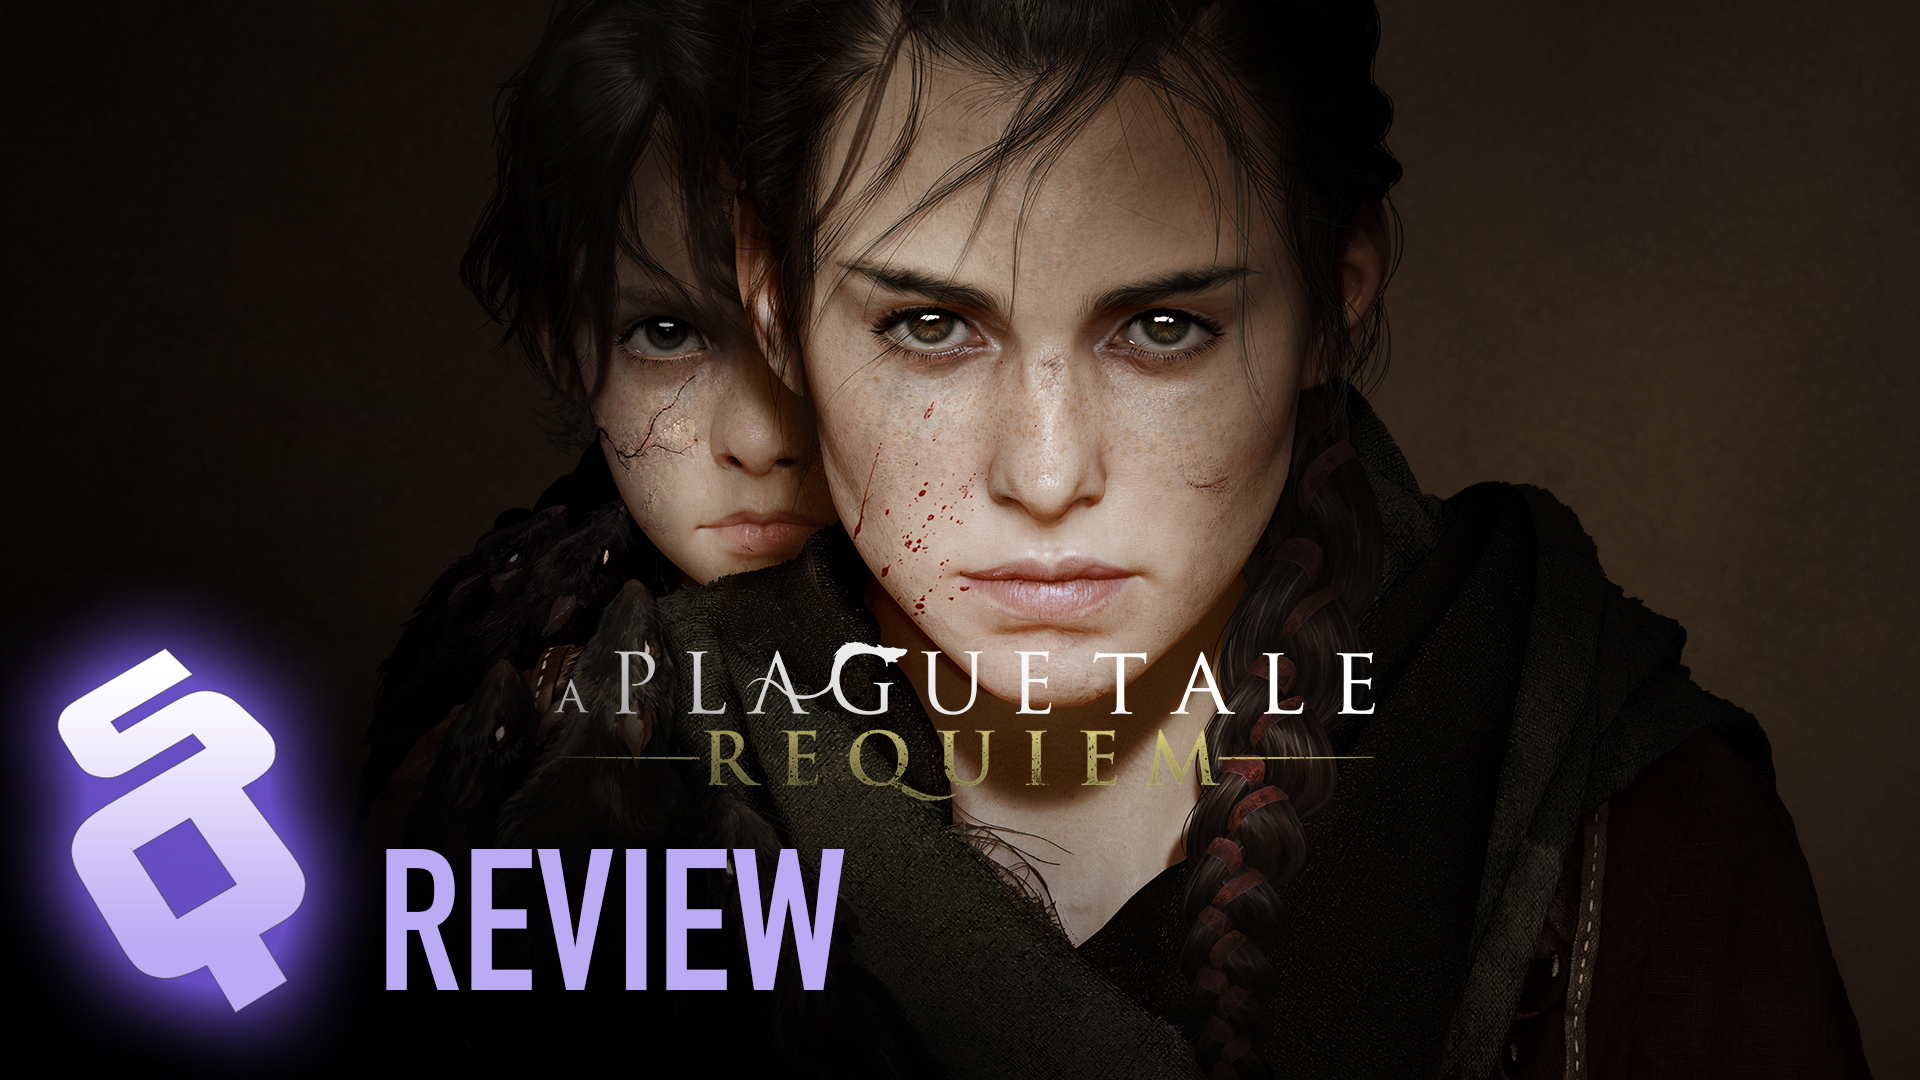 A Plague Tale: Requiem review